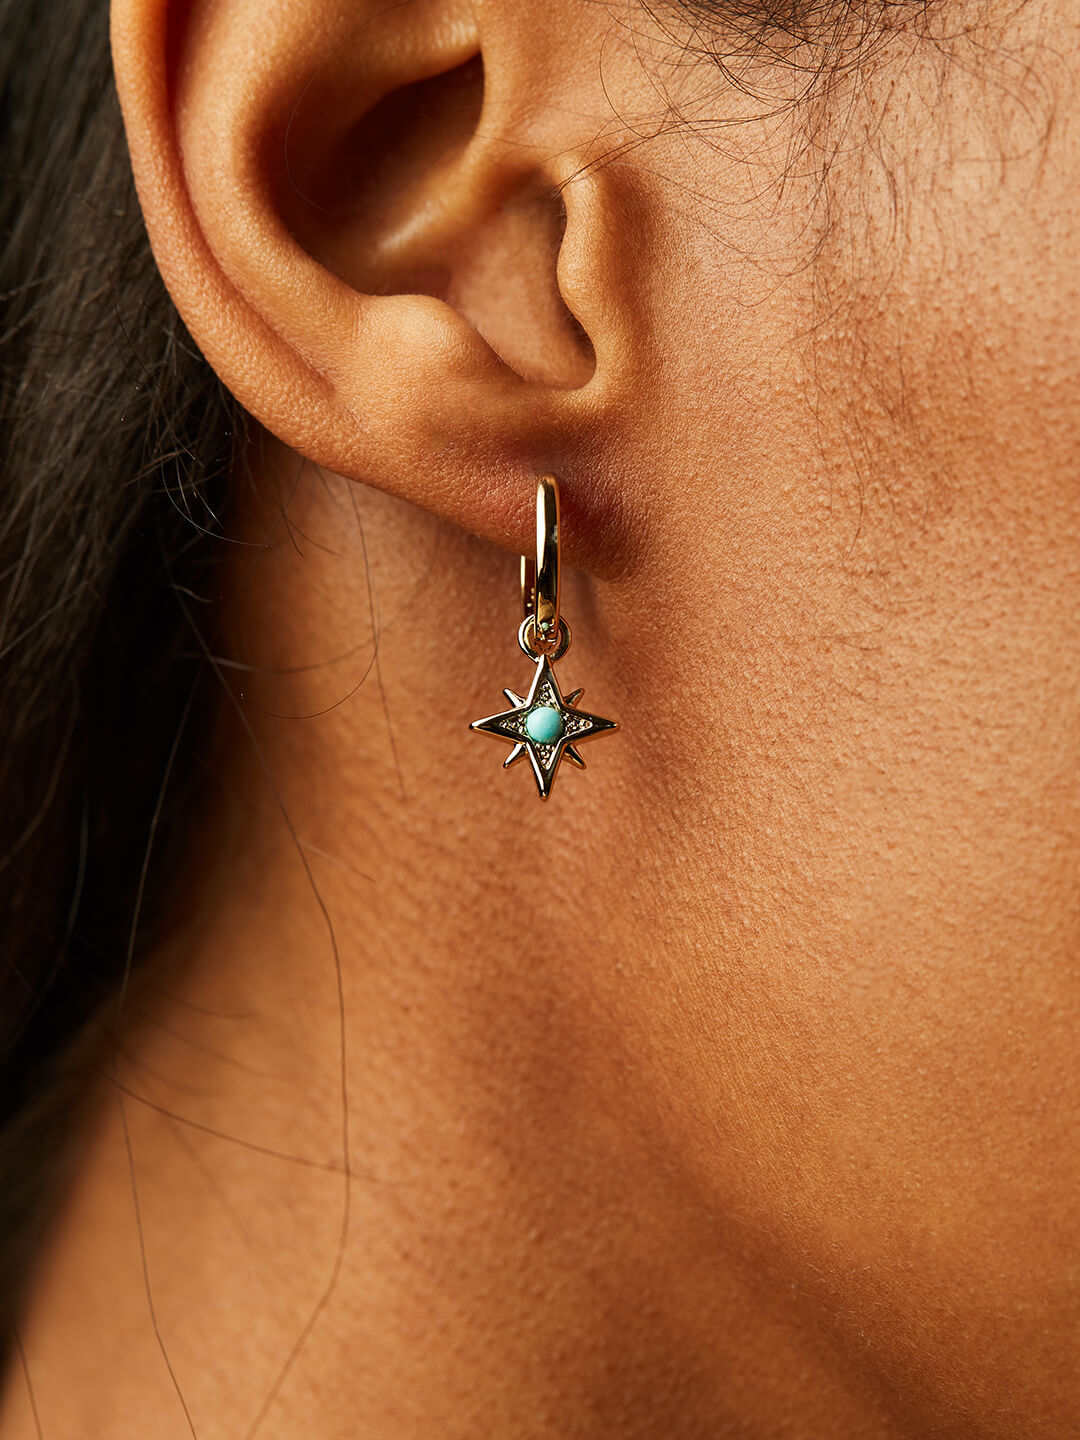 tiffanys jewelry earrings